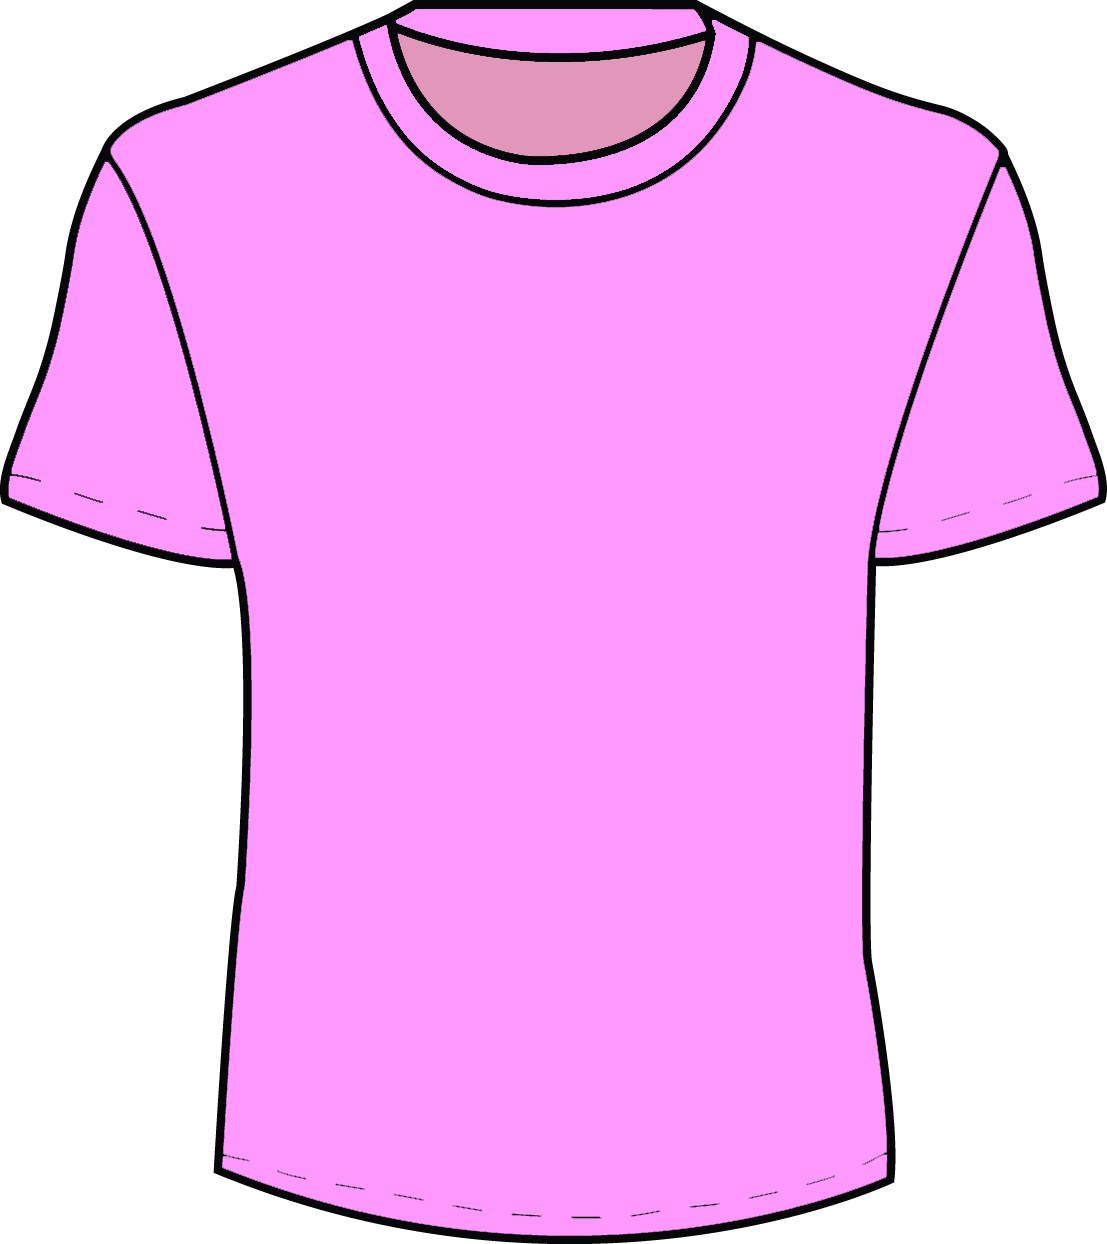 Pink T Shirt Template   Clipart Best